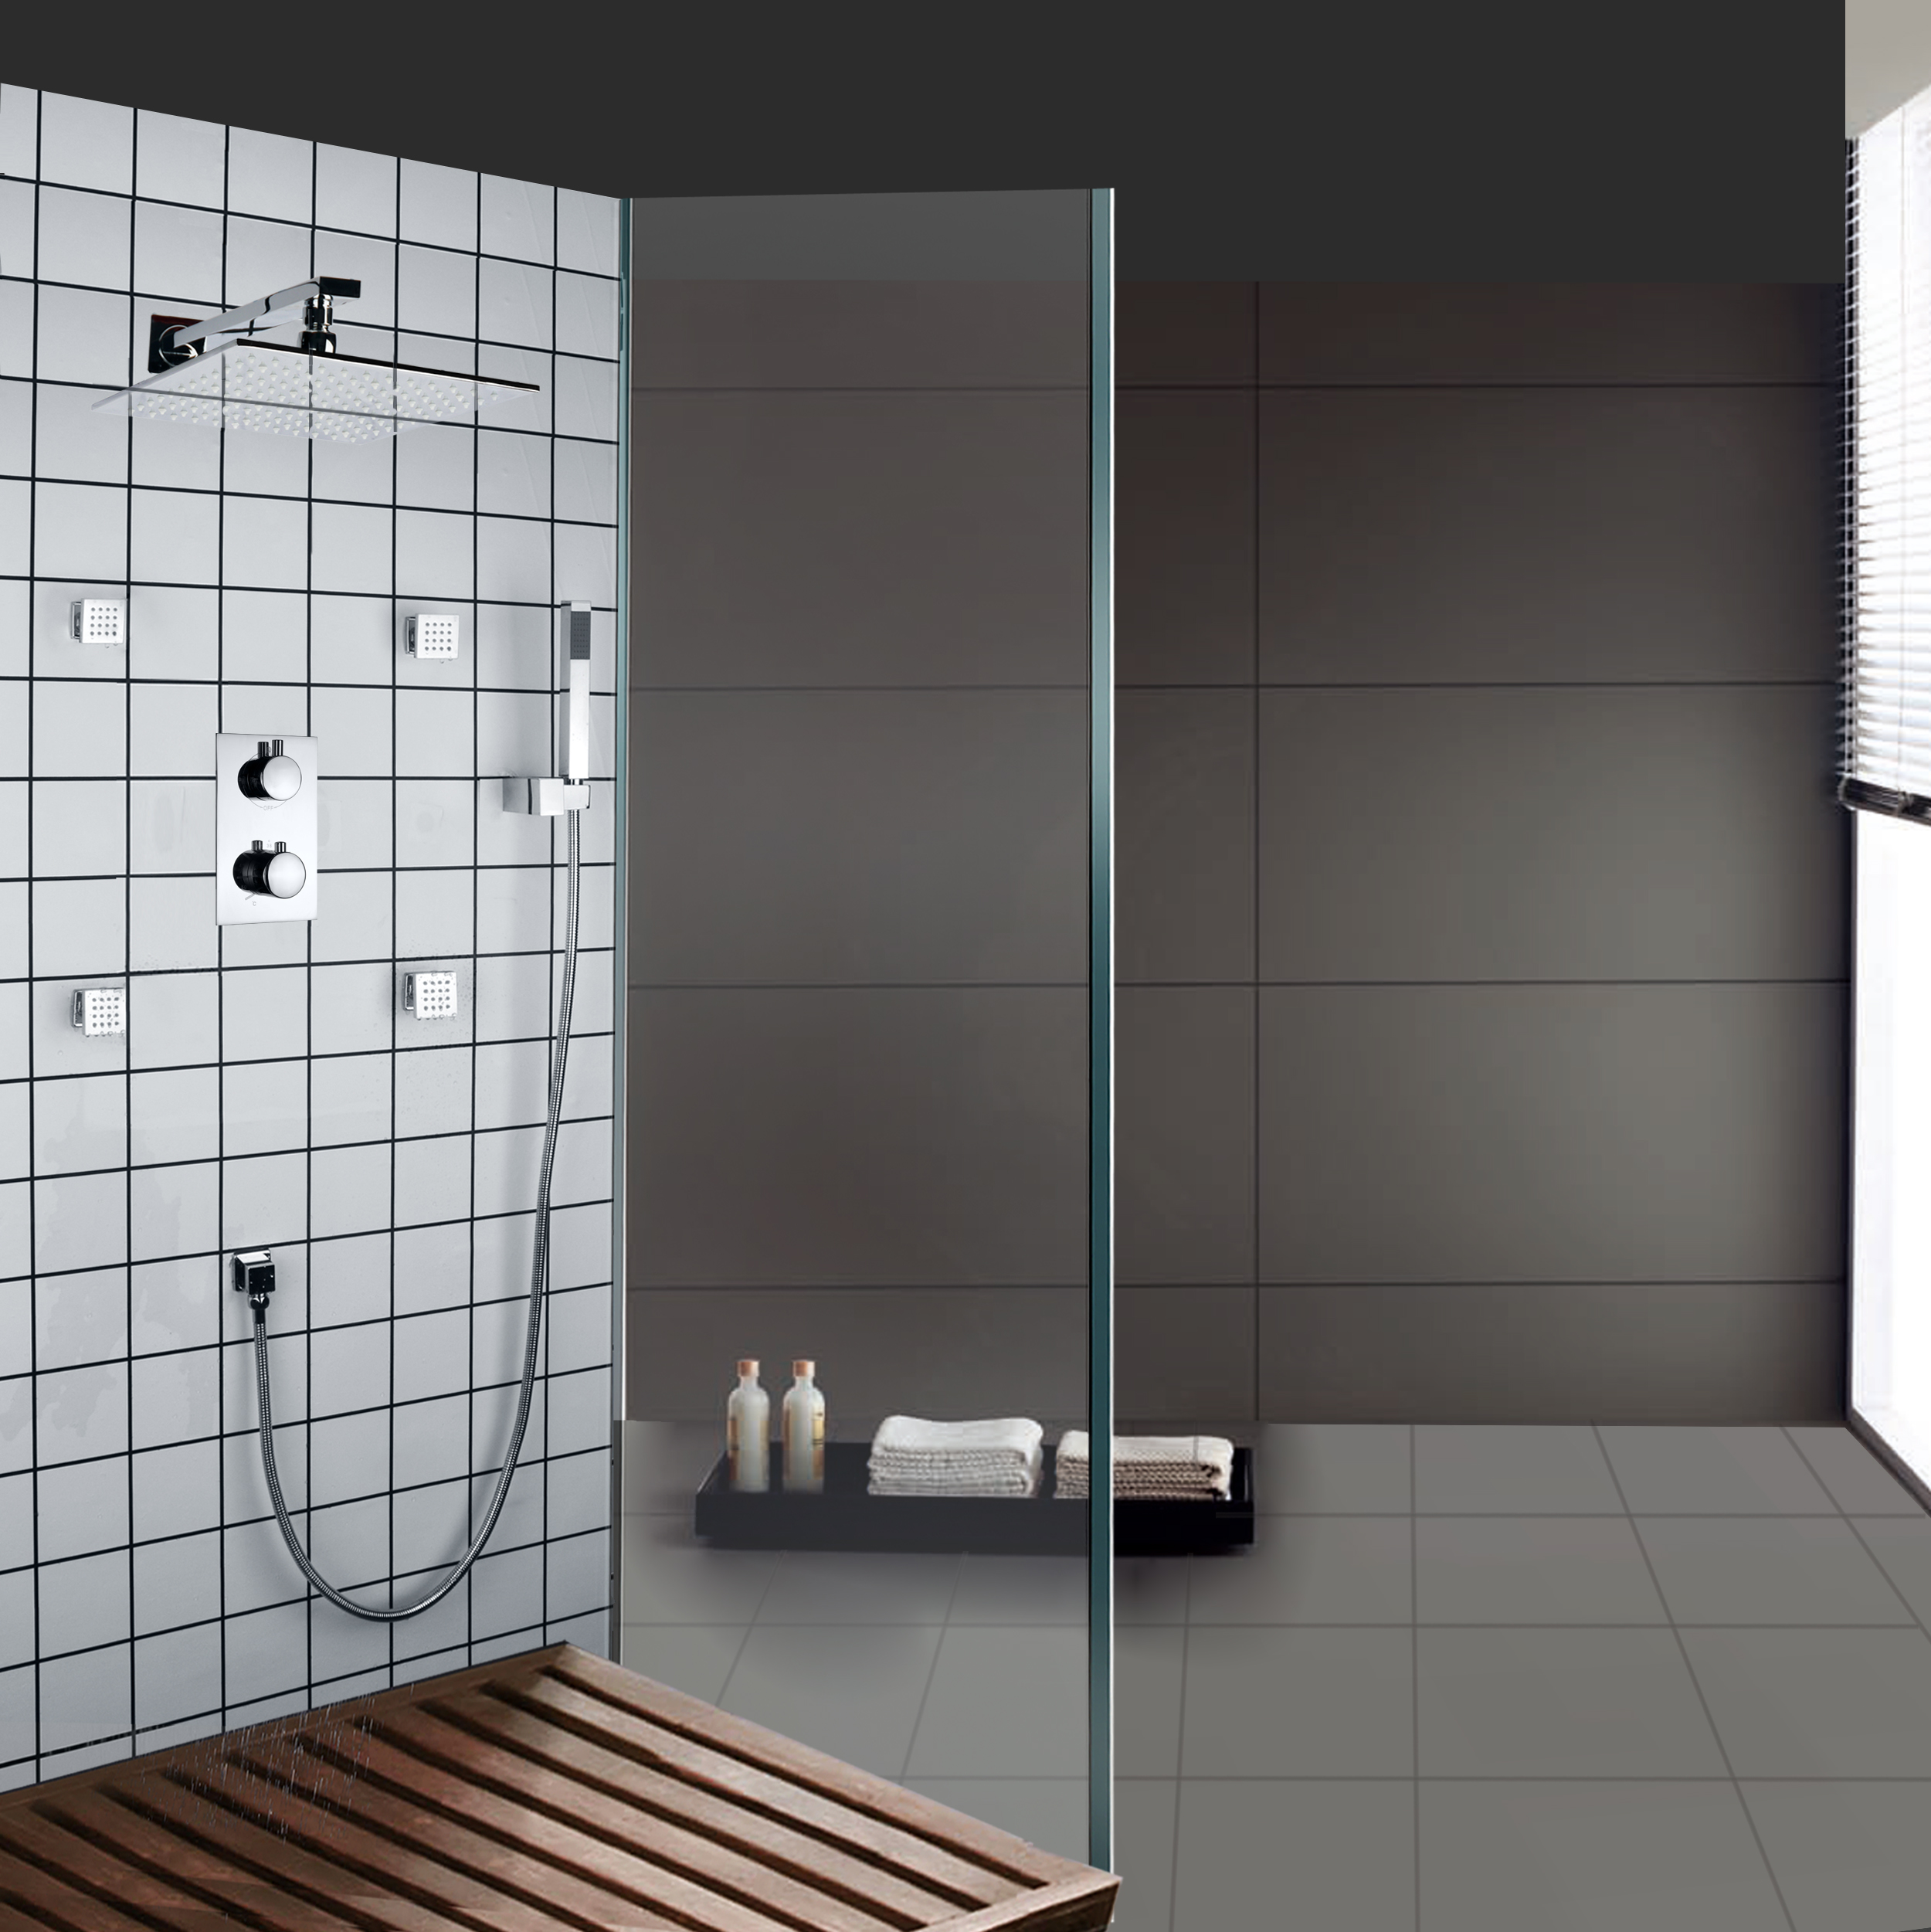 Sistema pulido cromo de las precipitaciones del panel del sistema de la ducha de los muebles del cuarto de baño de PDA de las bocas